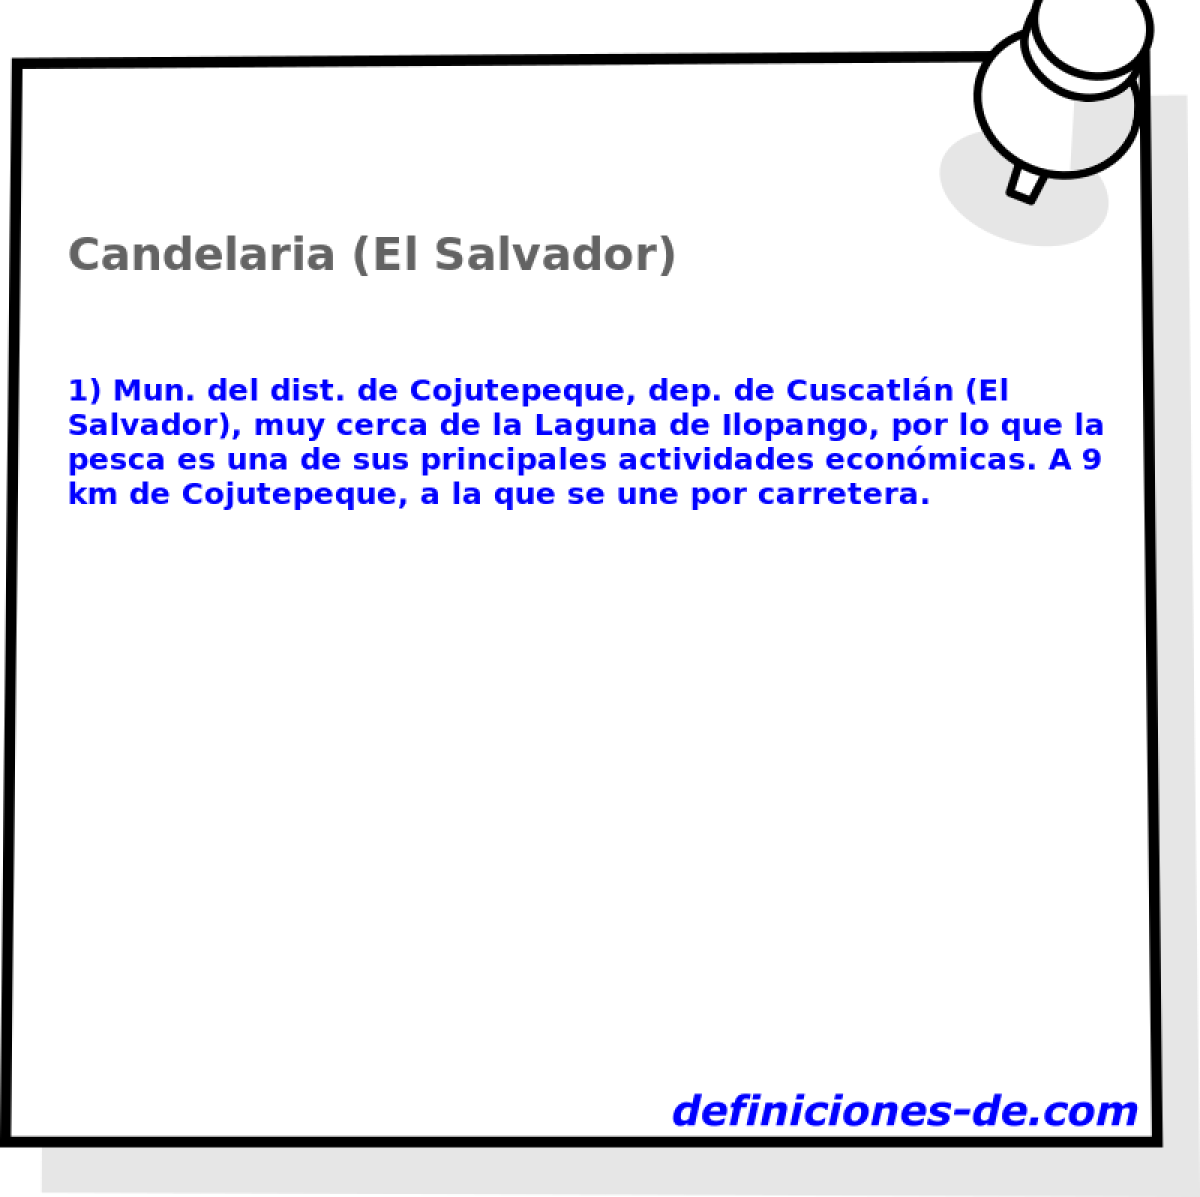 Candelaria (El Salvador) 